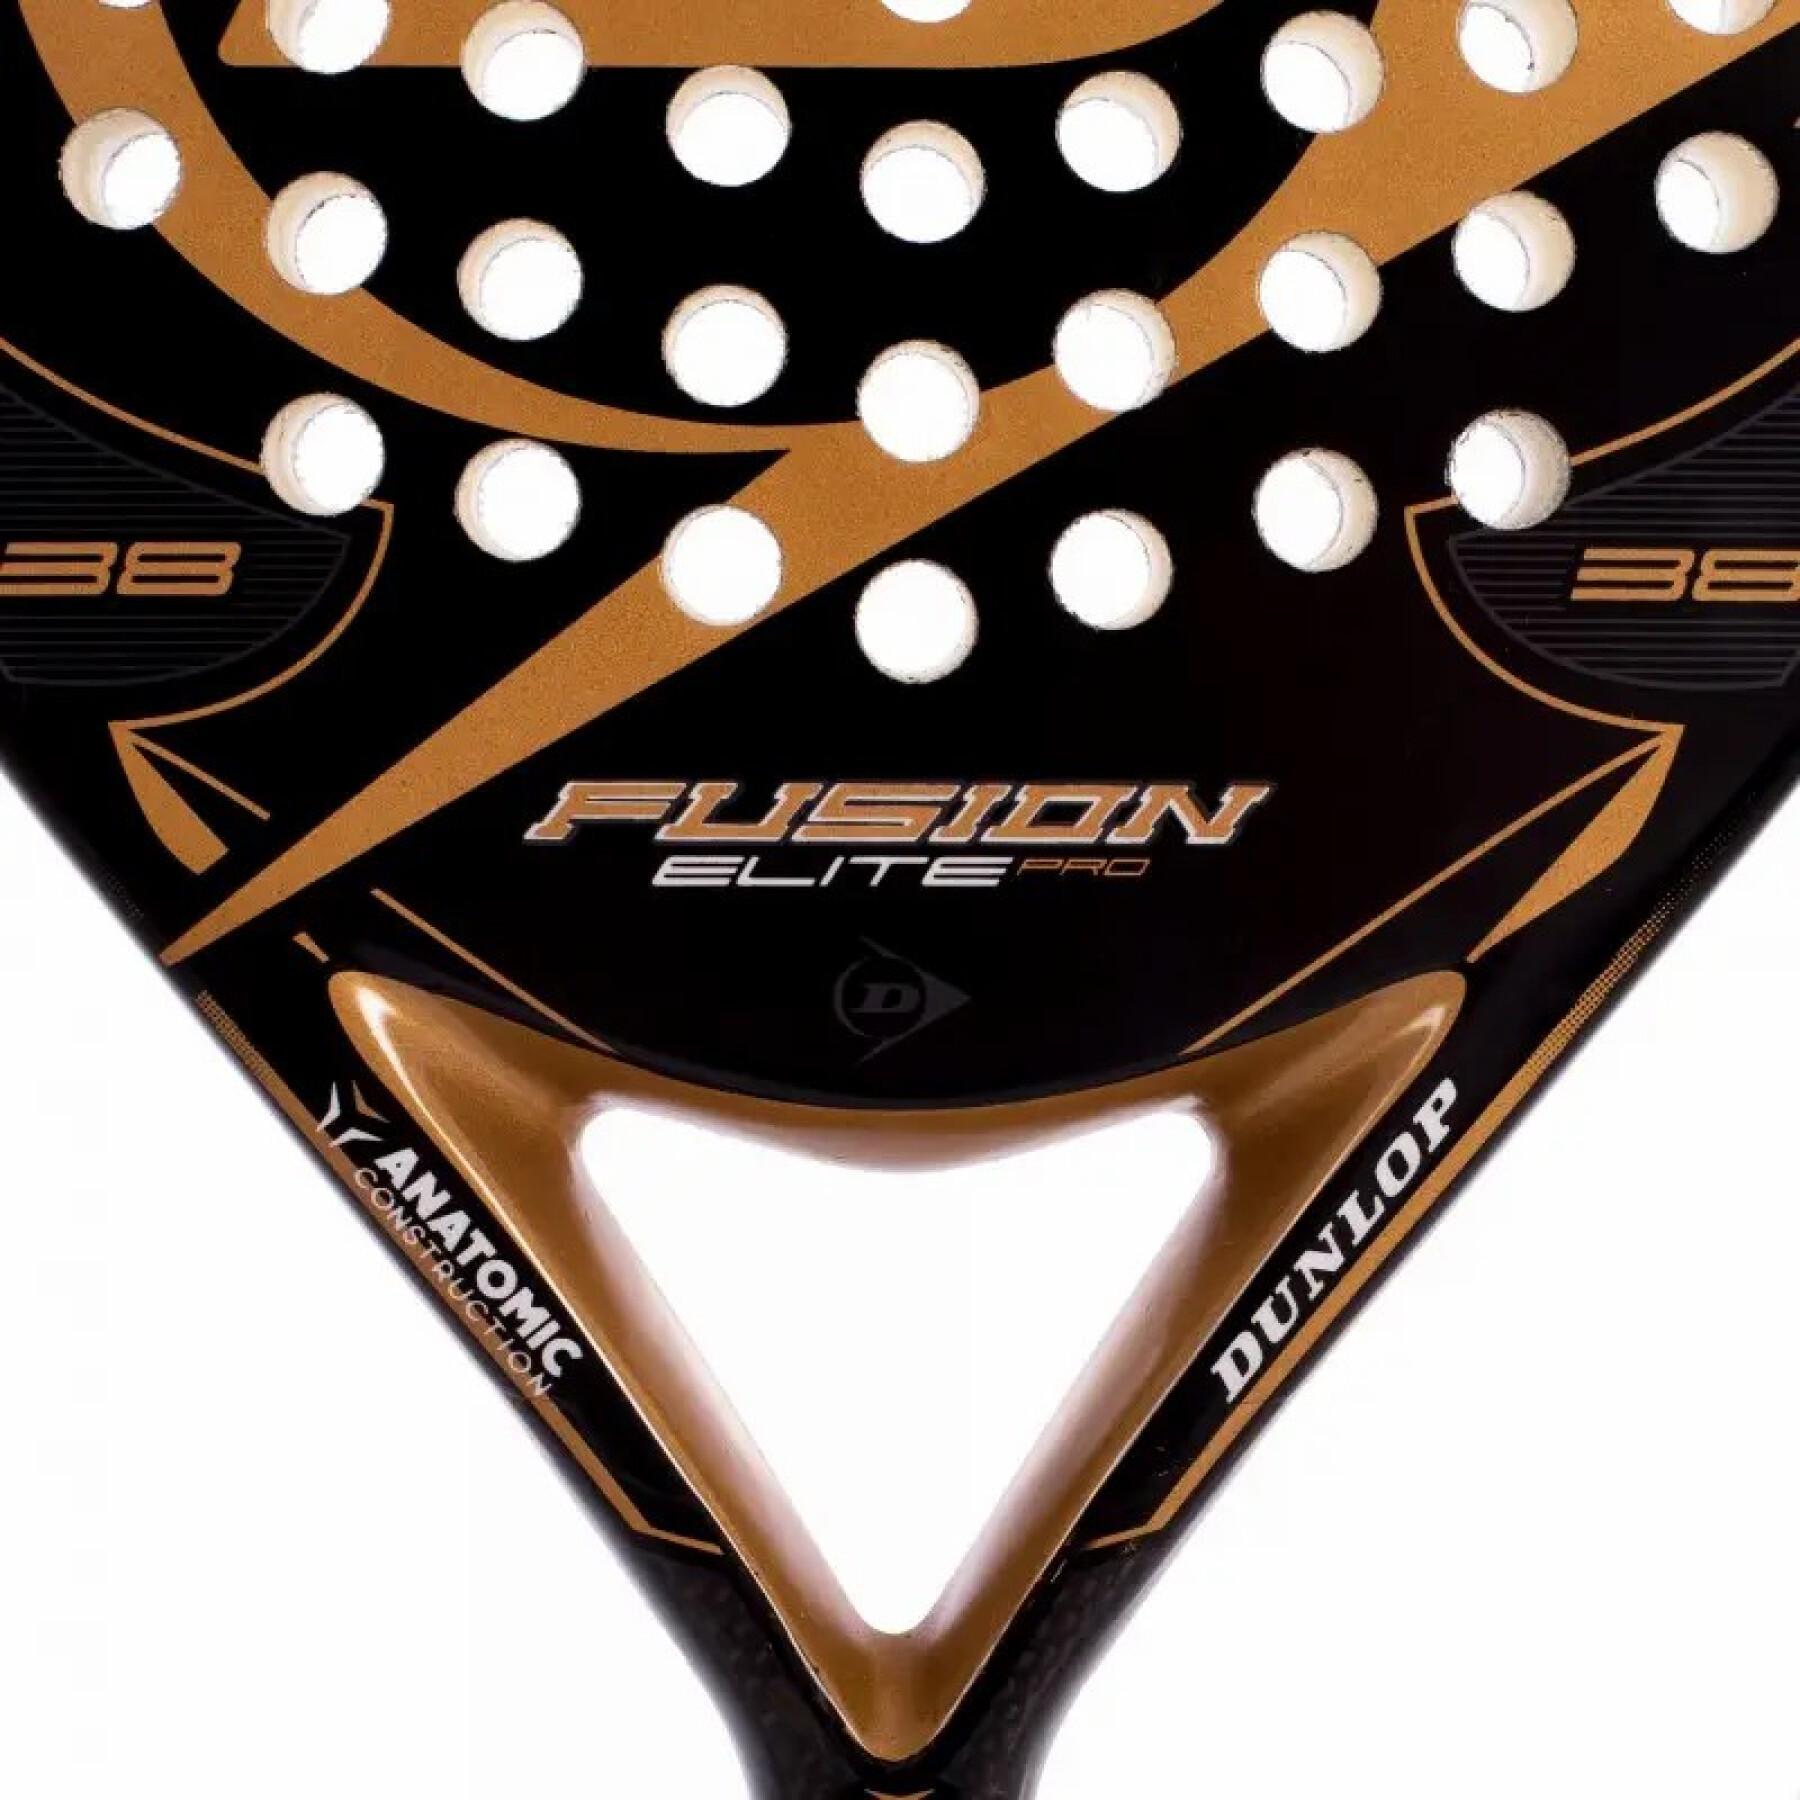 Paddelracket Dunlop Fusion Elite Pro